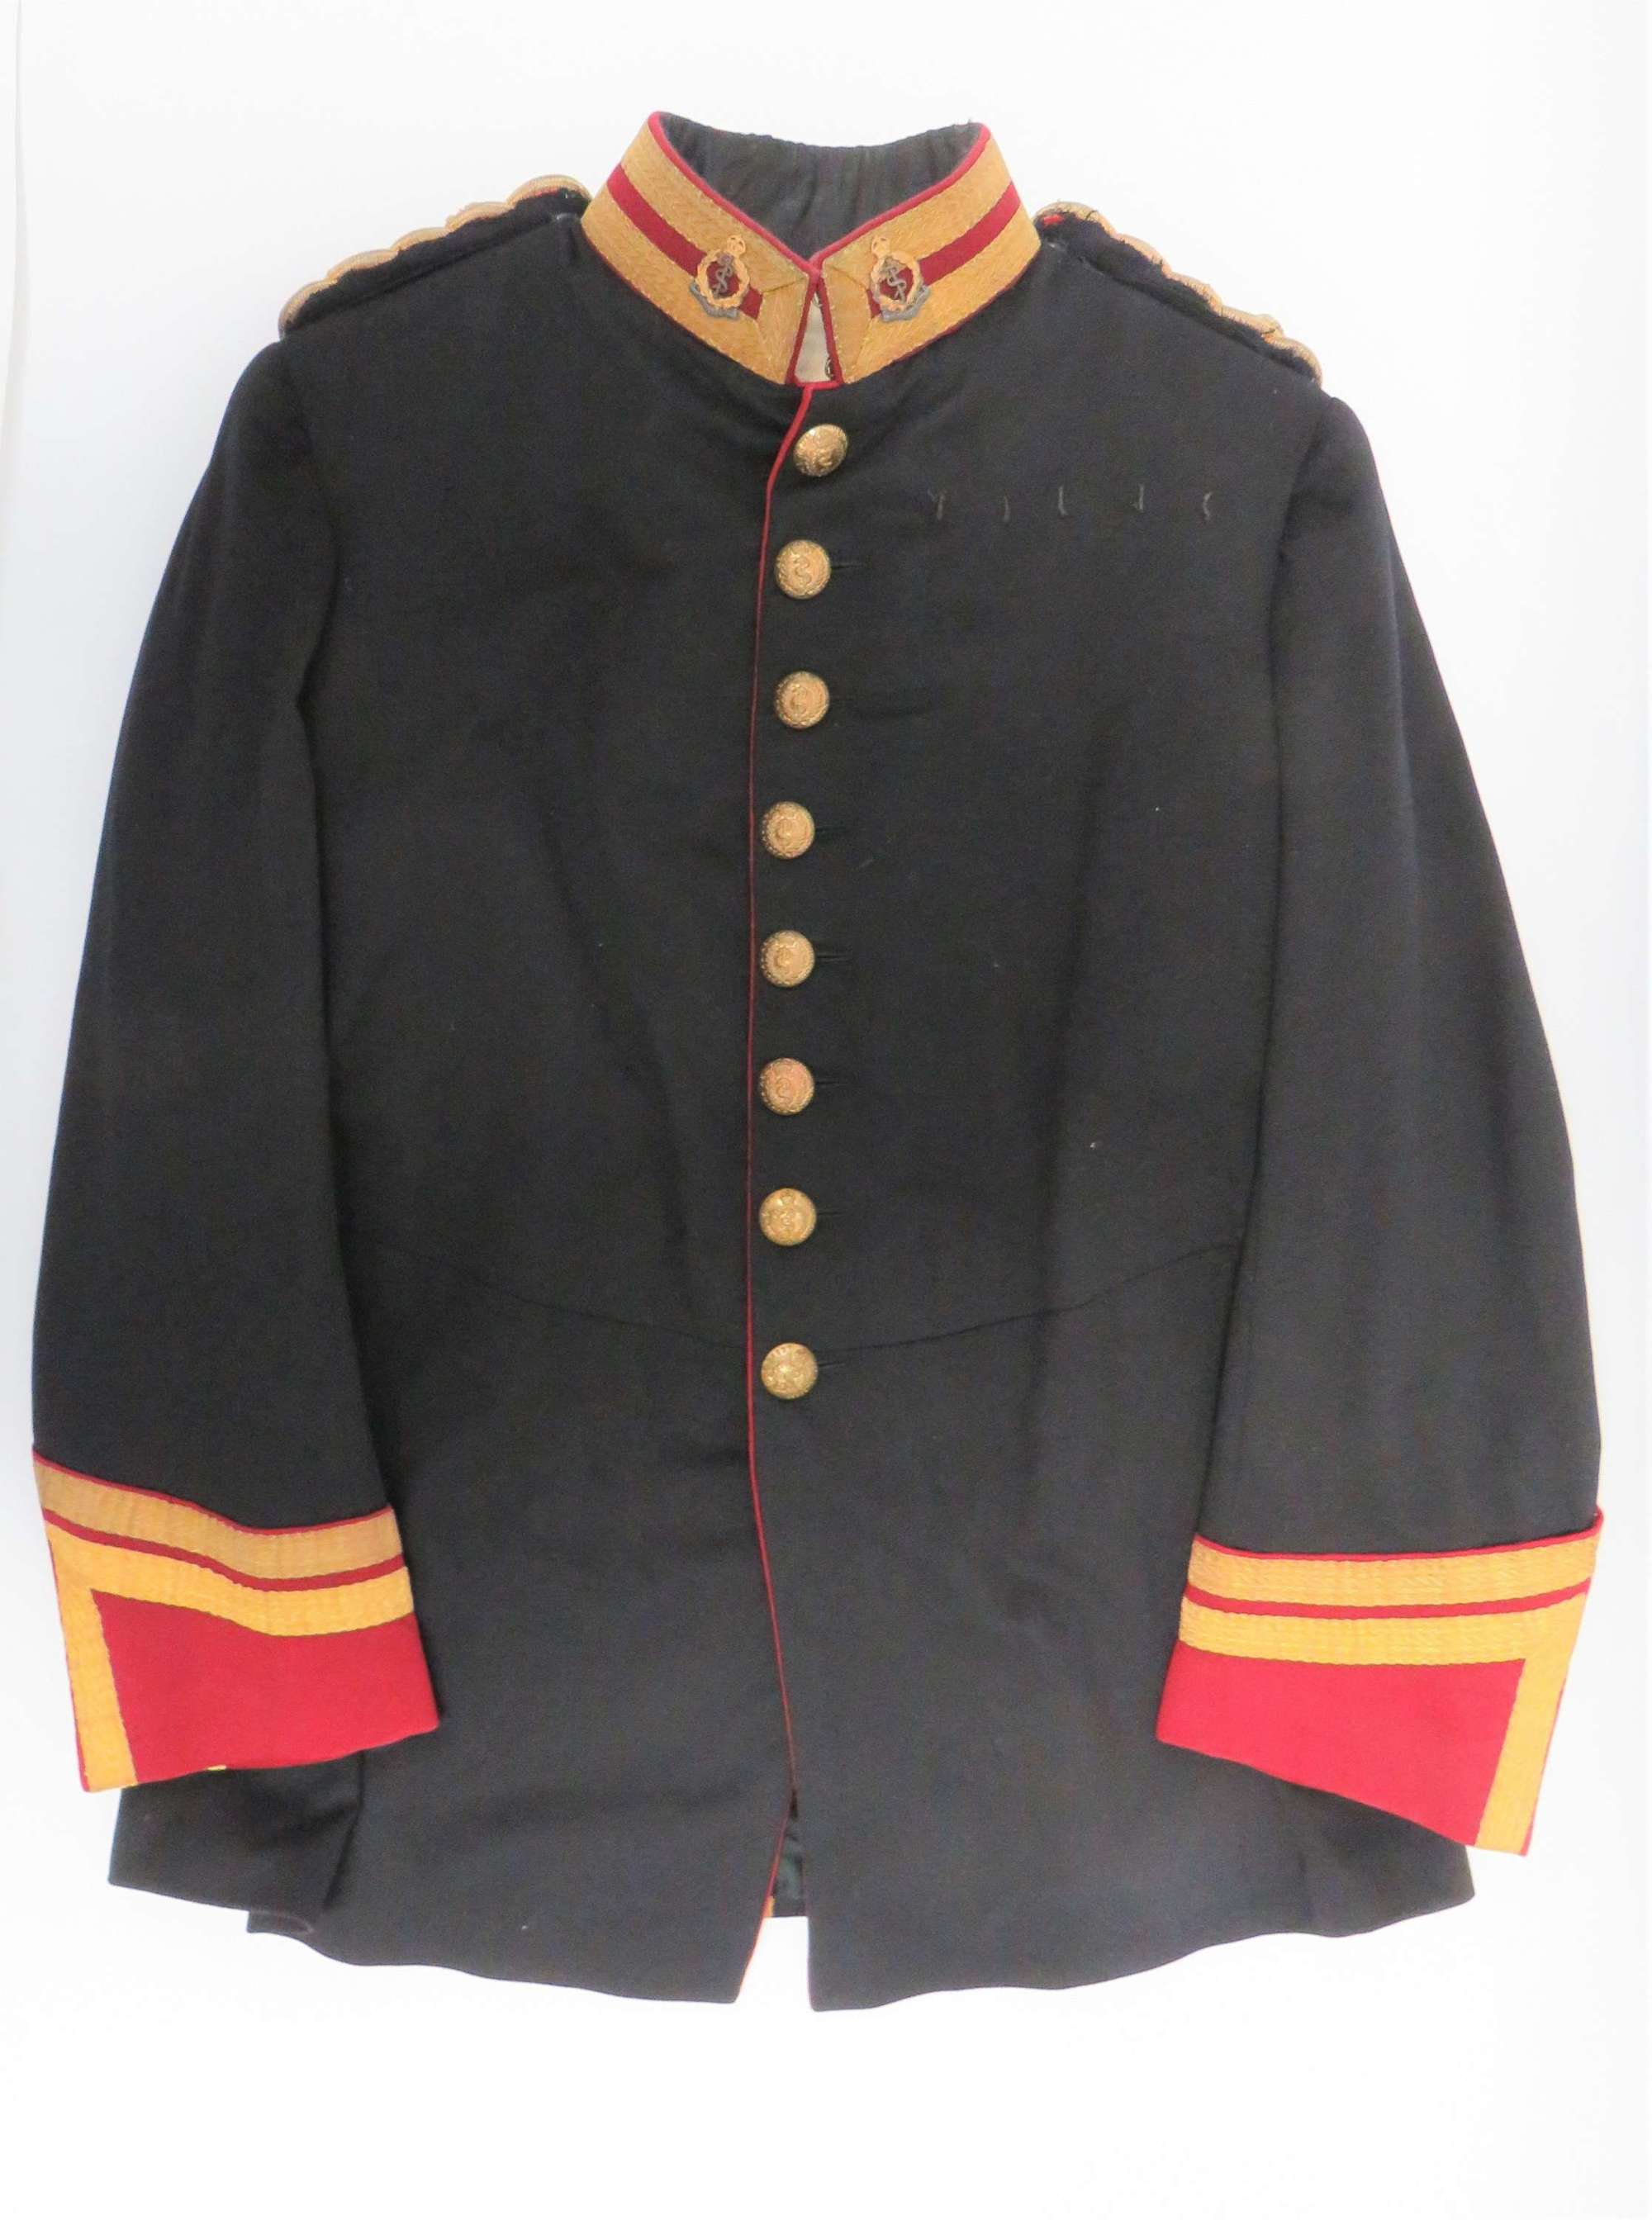 Post 1901 R.A.M.C Colonels Full Dress Tunic